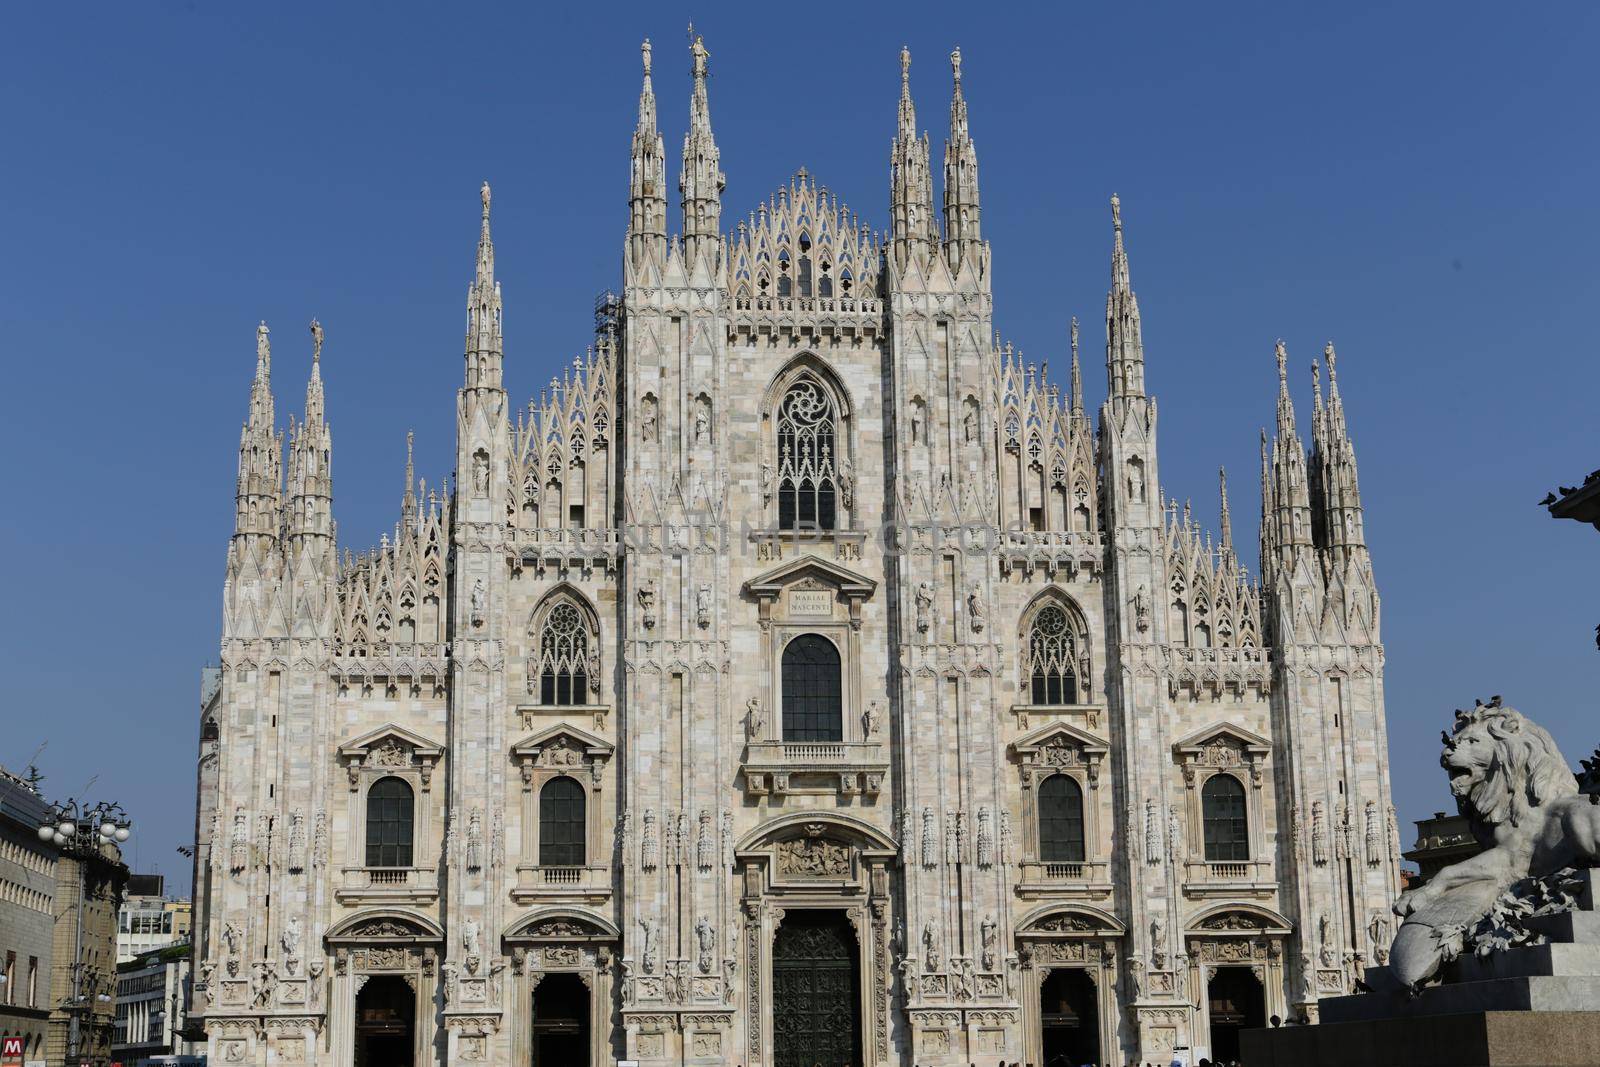 Duomo in Milan by Kartouchken